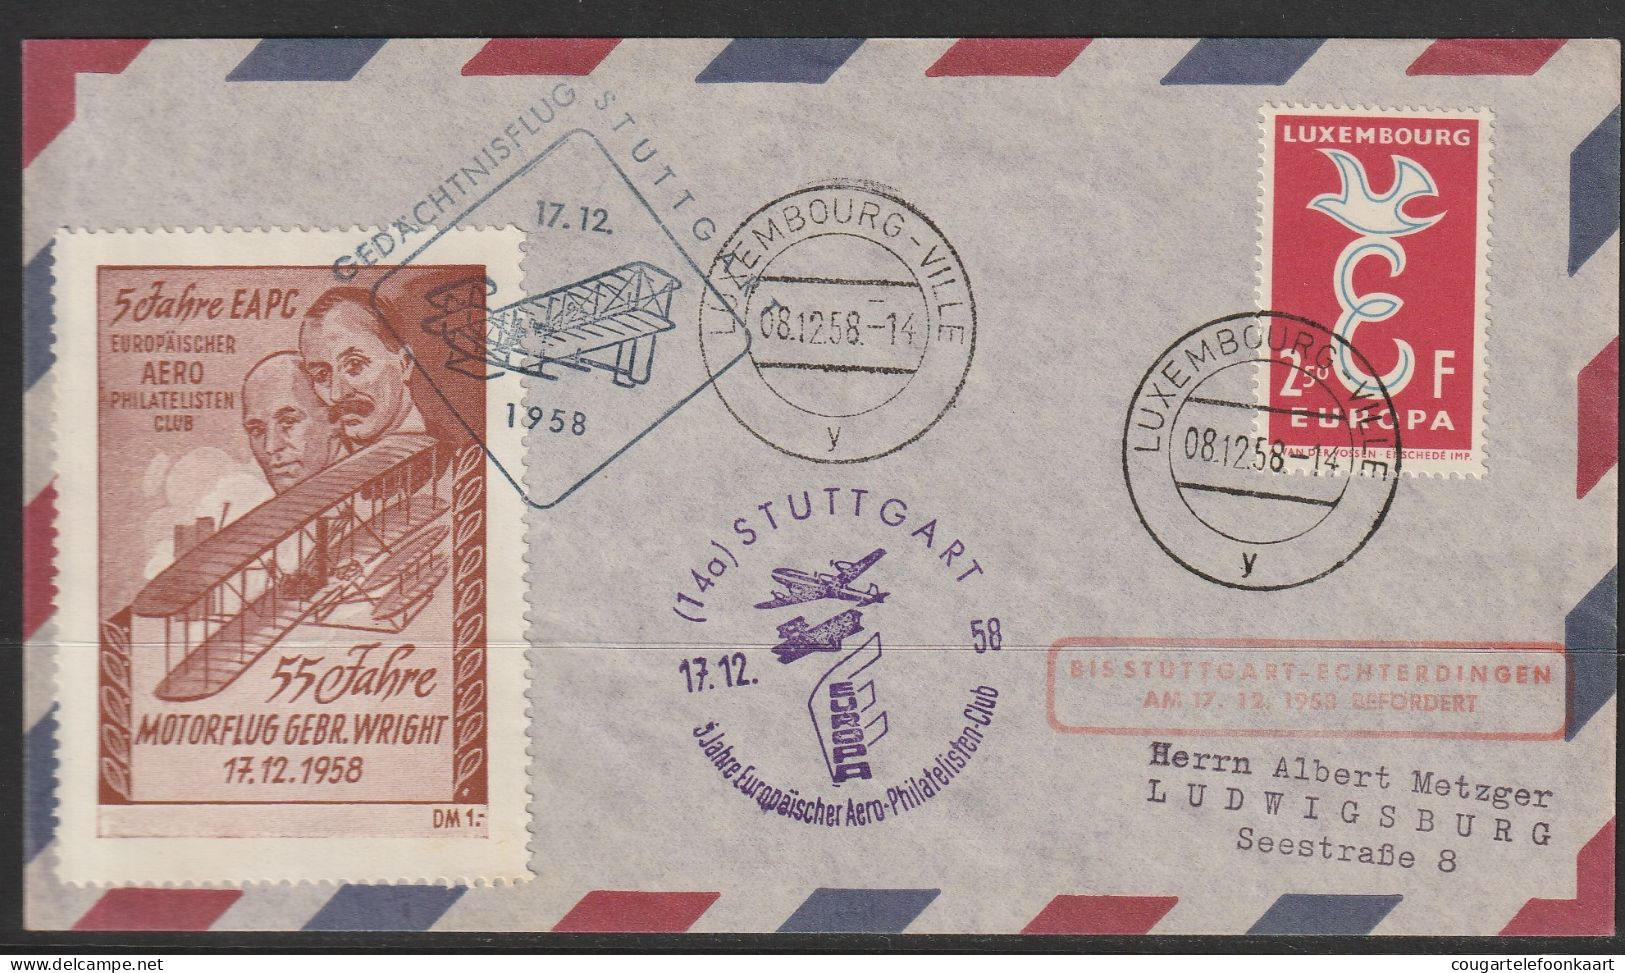 1958, Lufthansa, Gedächtnisflug Stuttgart, Luxembourg-Ville, Zuleitungspost, Wright - Briefe U. Dokumente